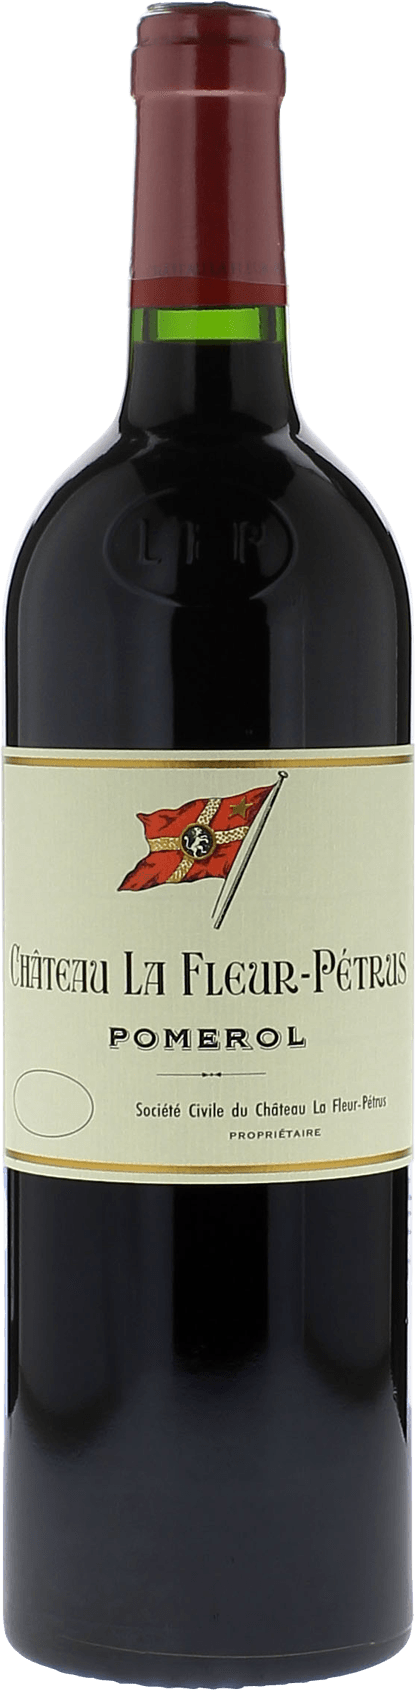 La fleur petrus 2019  Pomerol, Bordeaux rouge